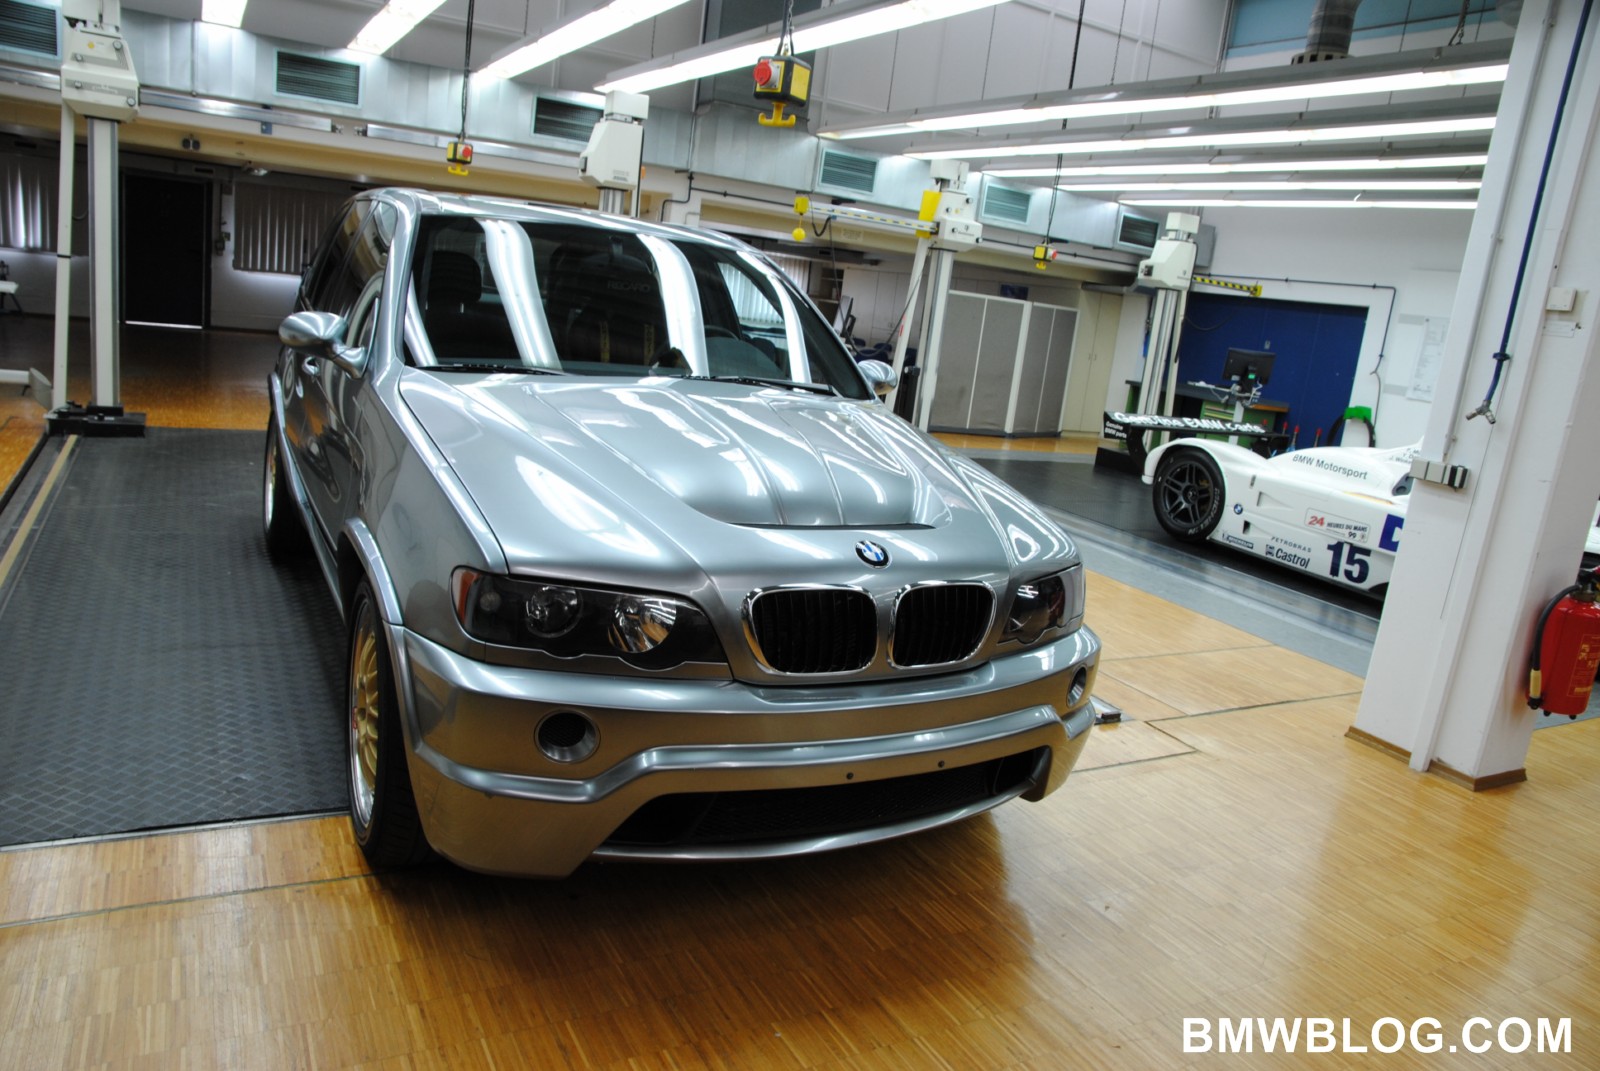 The BMW X5 Le Mans